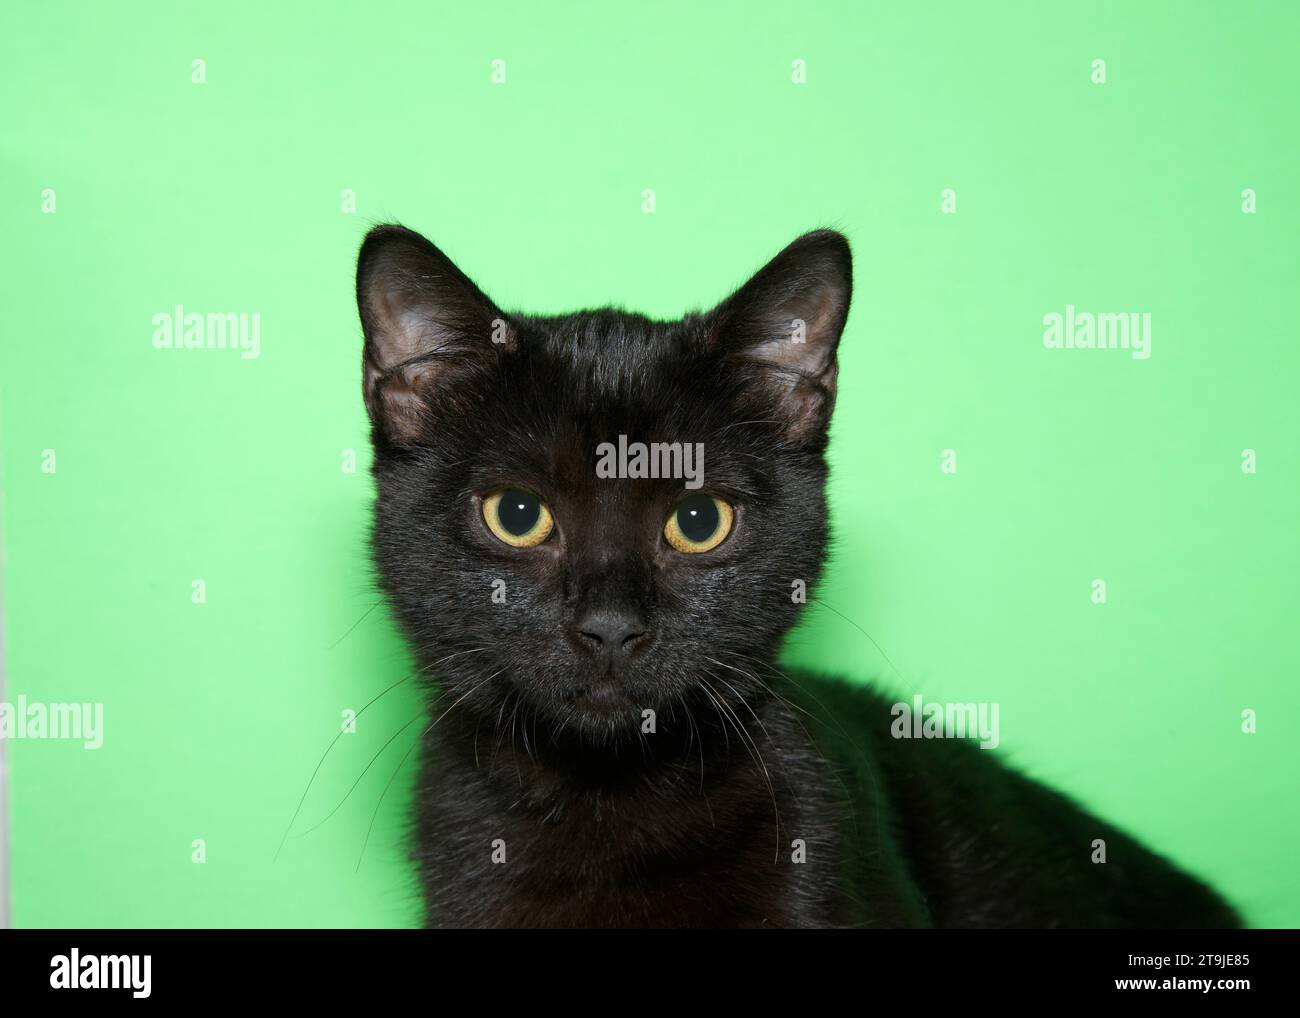 ritratto ravvicinato di un gattino nero tabby che guarda verso il basso lo spettatore con gli alunni dilatati. Sfondo verde con spazio di copia. Foto Stock